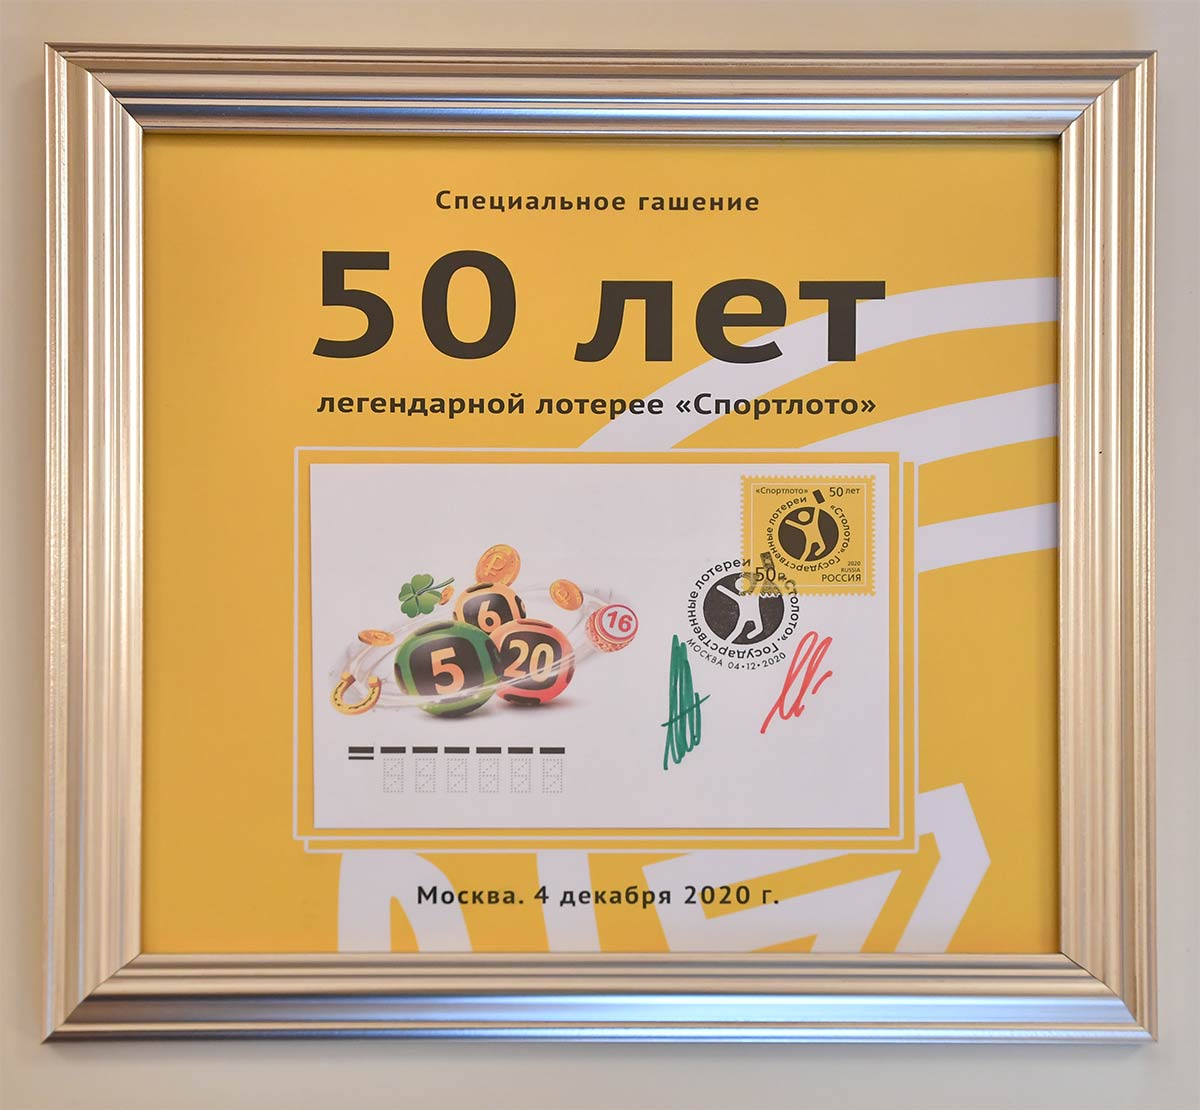 В Москве торжественно погасили марку в честь 50-летия «Спортлото». Фото: Иван Макеев/КП